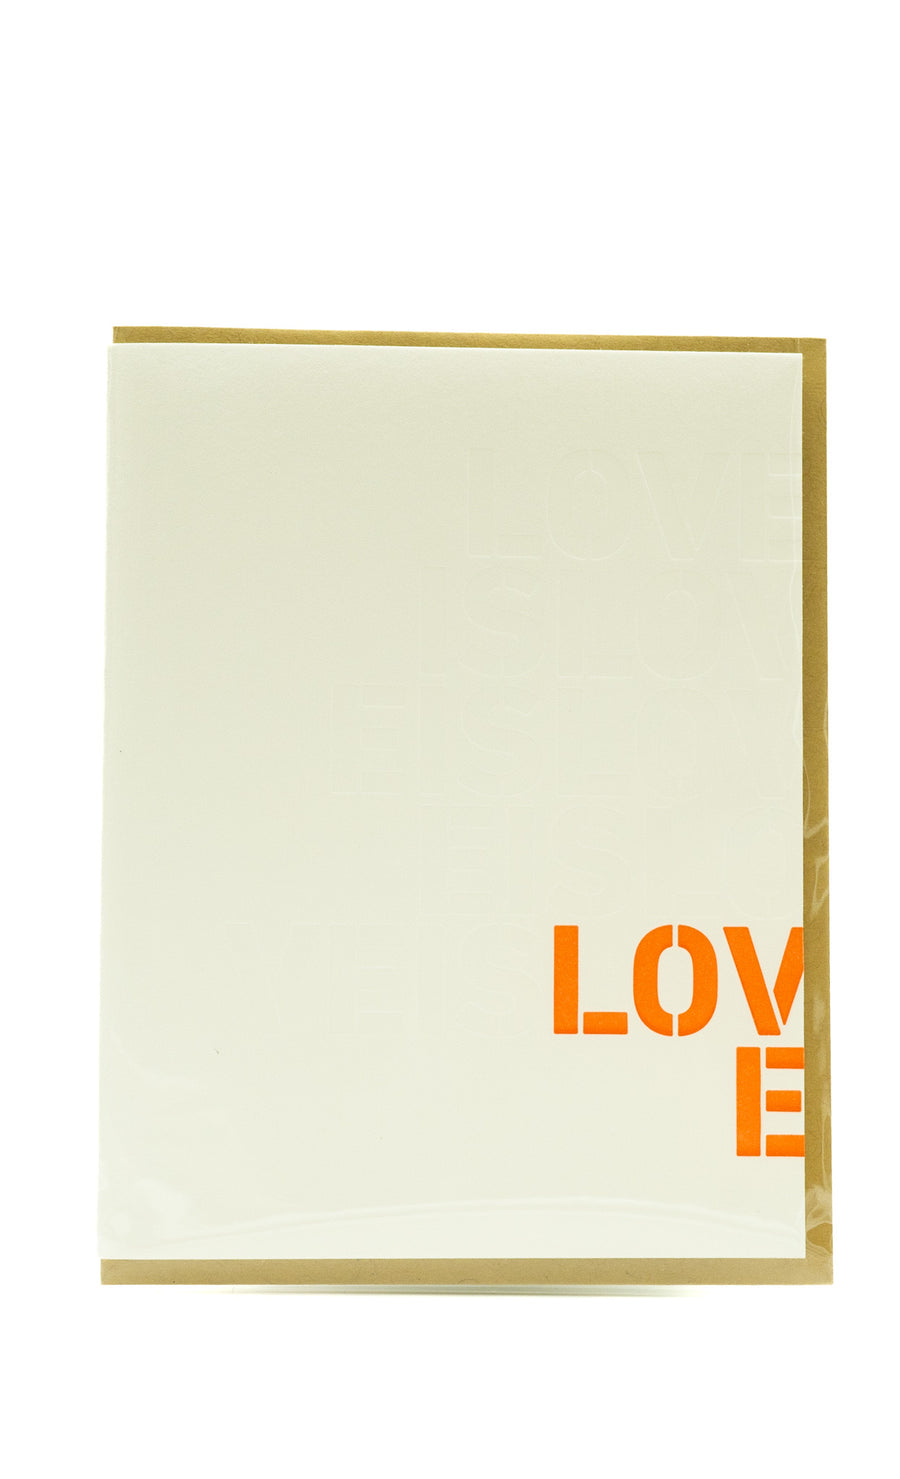 Love is Love is Love Card by Lark Press